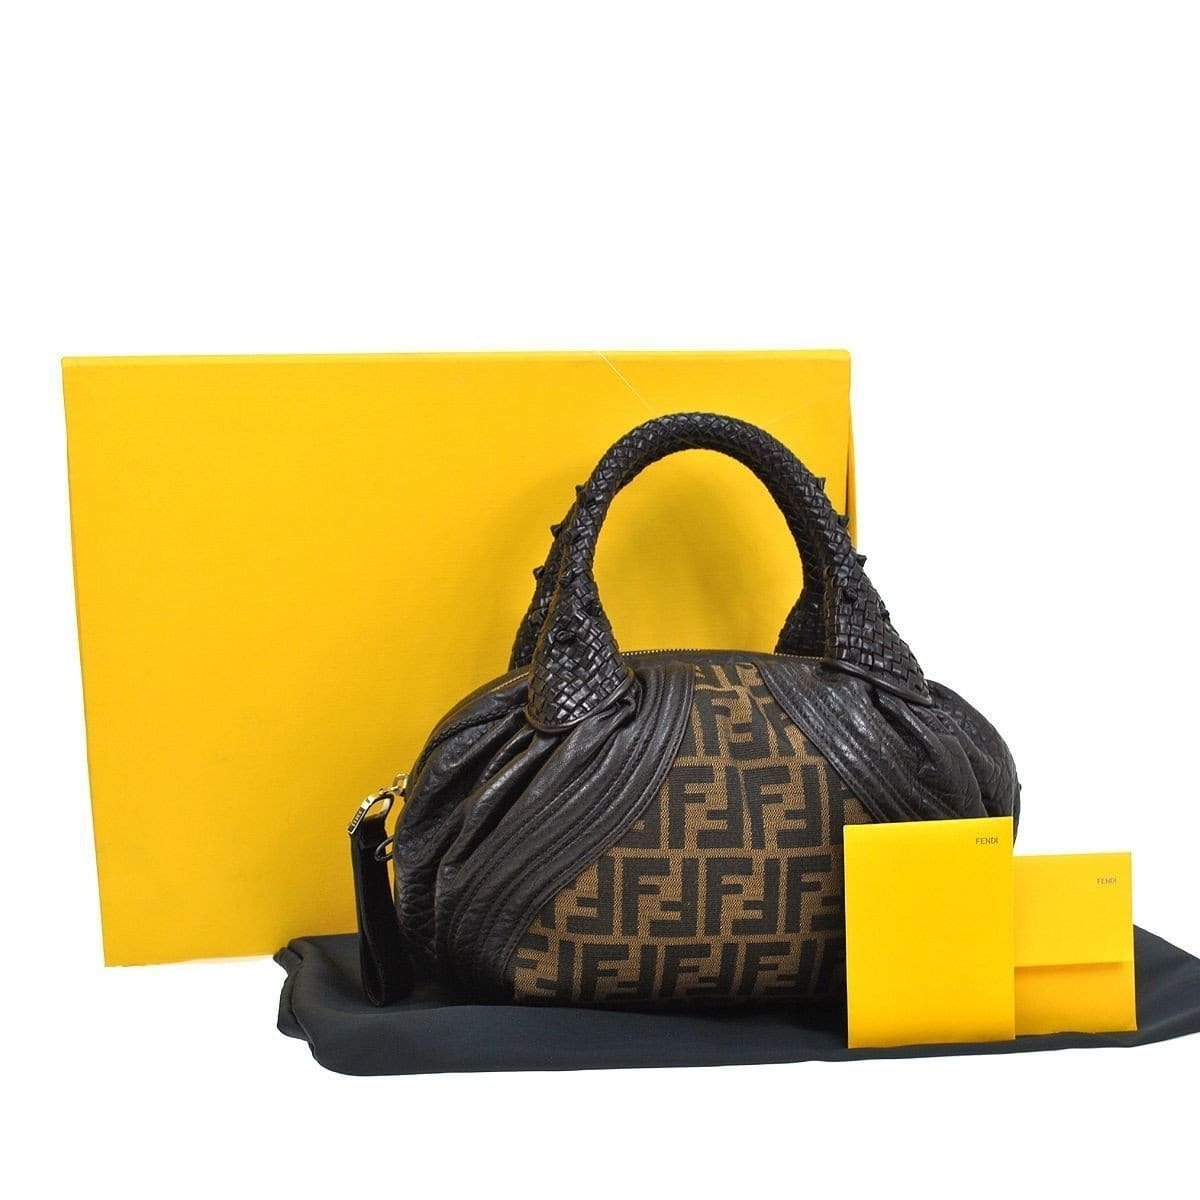 How To Authenticate Fendi Handbags